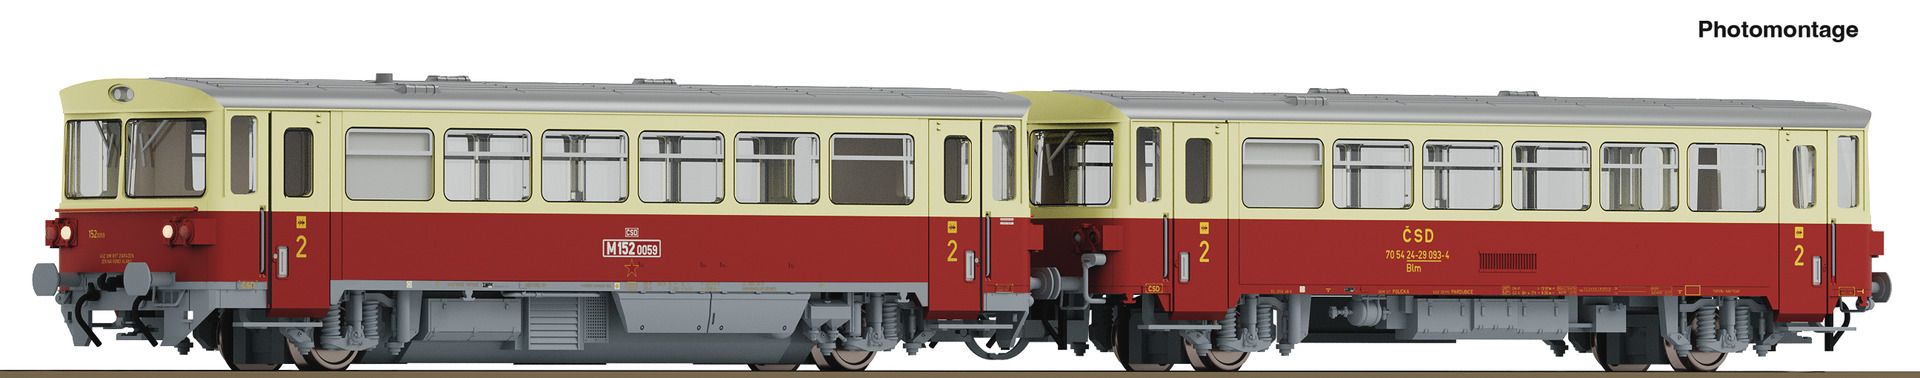 Roco 7780001 - Triebwagen mit Beiwagen M152.0059, CSD, Ep.IV